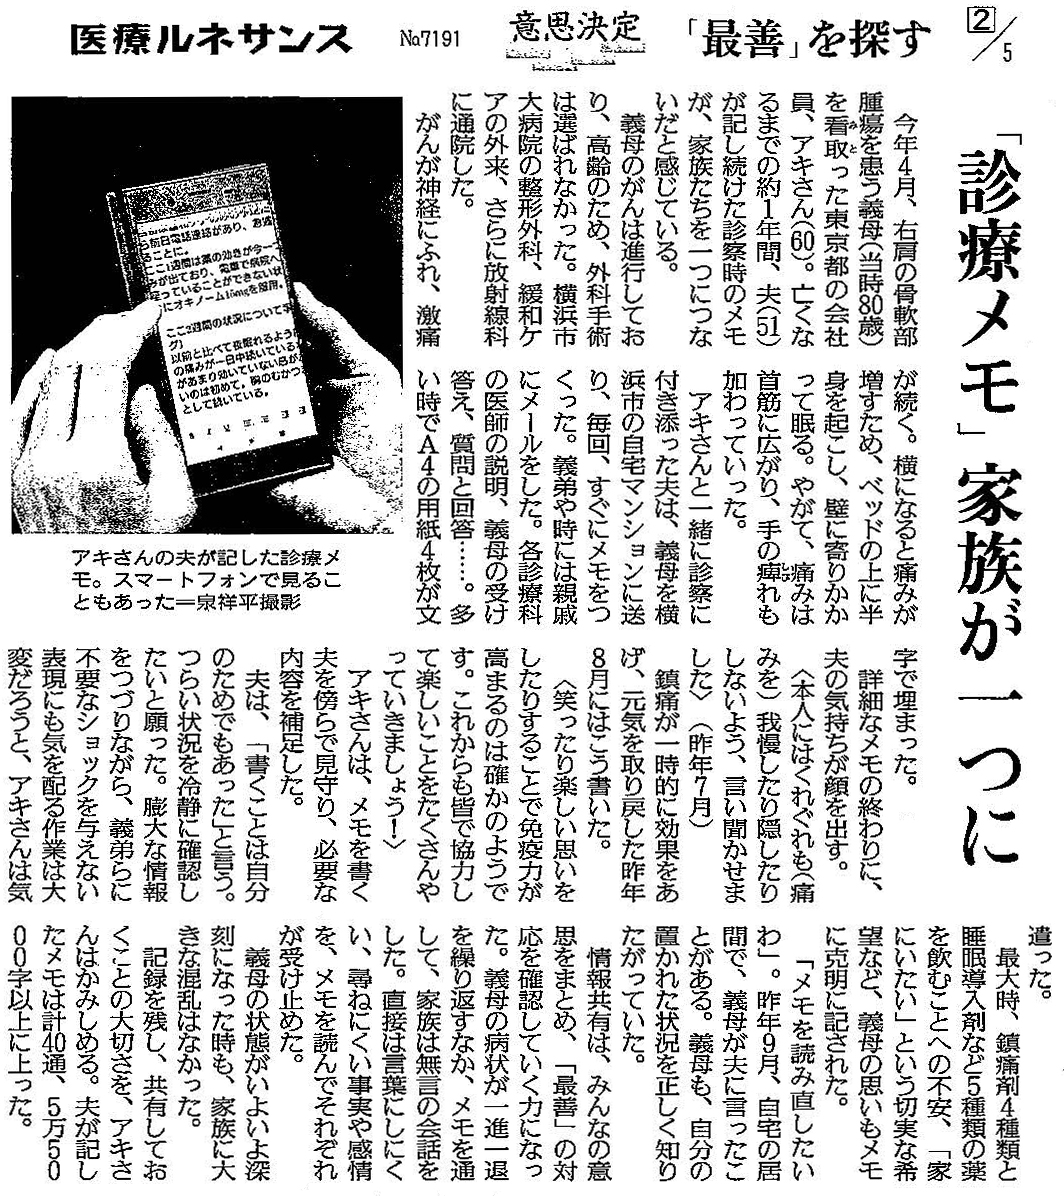 読売新聞 2019年12月24日掲載記事